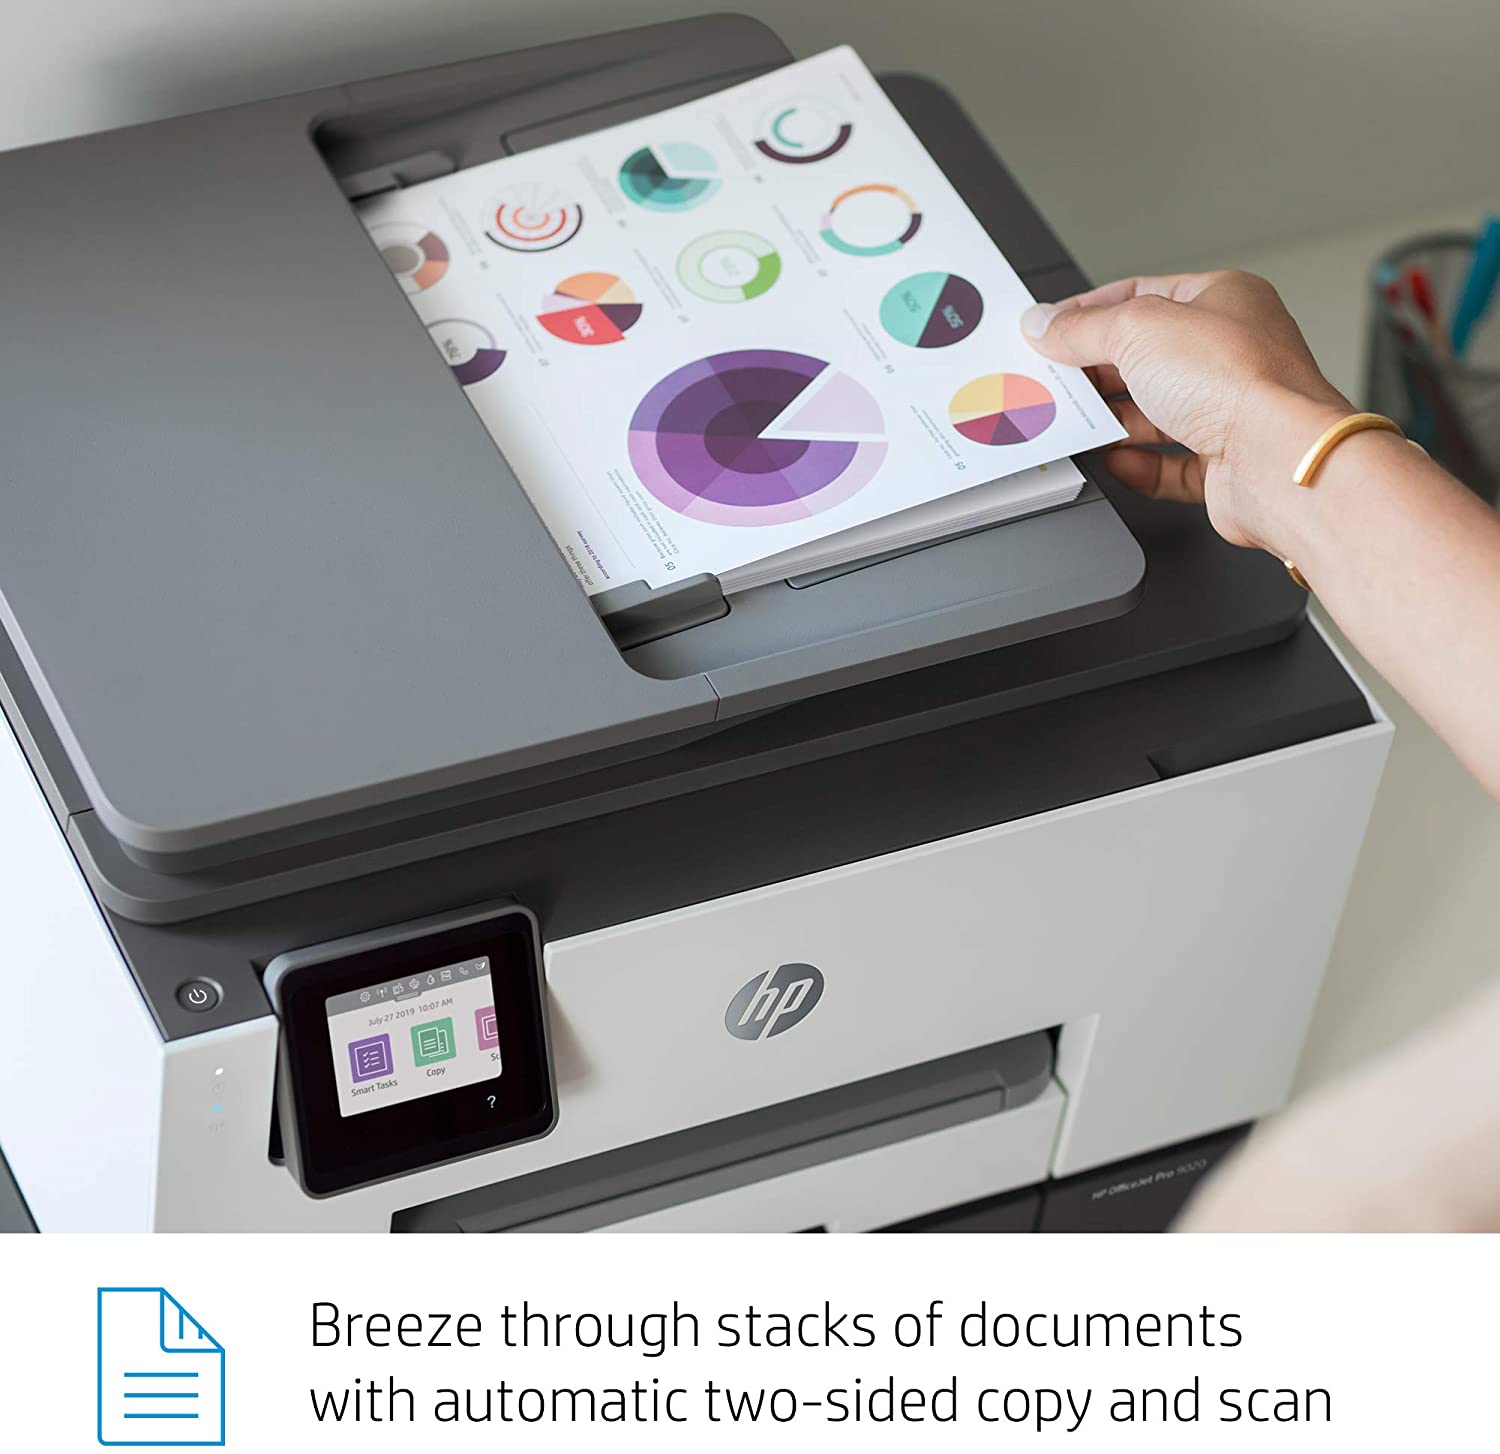 Impresora HP Multifunción  OfficeJet Pro 9020 imprime, copia, escanea a doble cara de una sola pasada, fax  Adf automatico a doble cara Wifi color 22 ppm negro y 18 ppm color